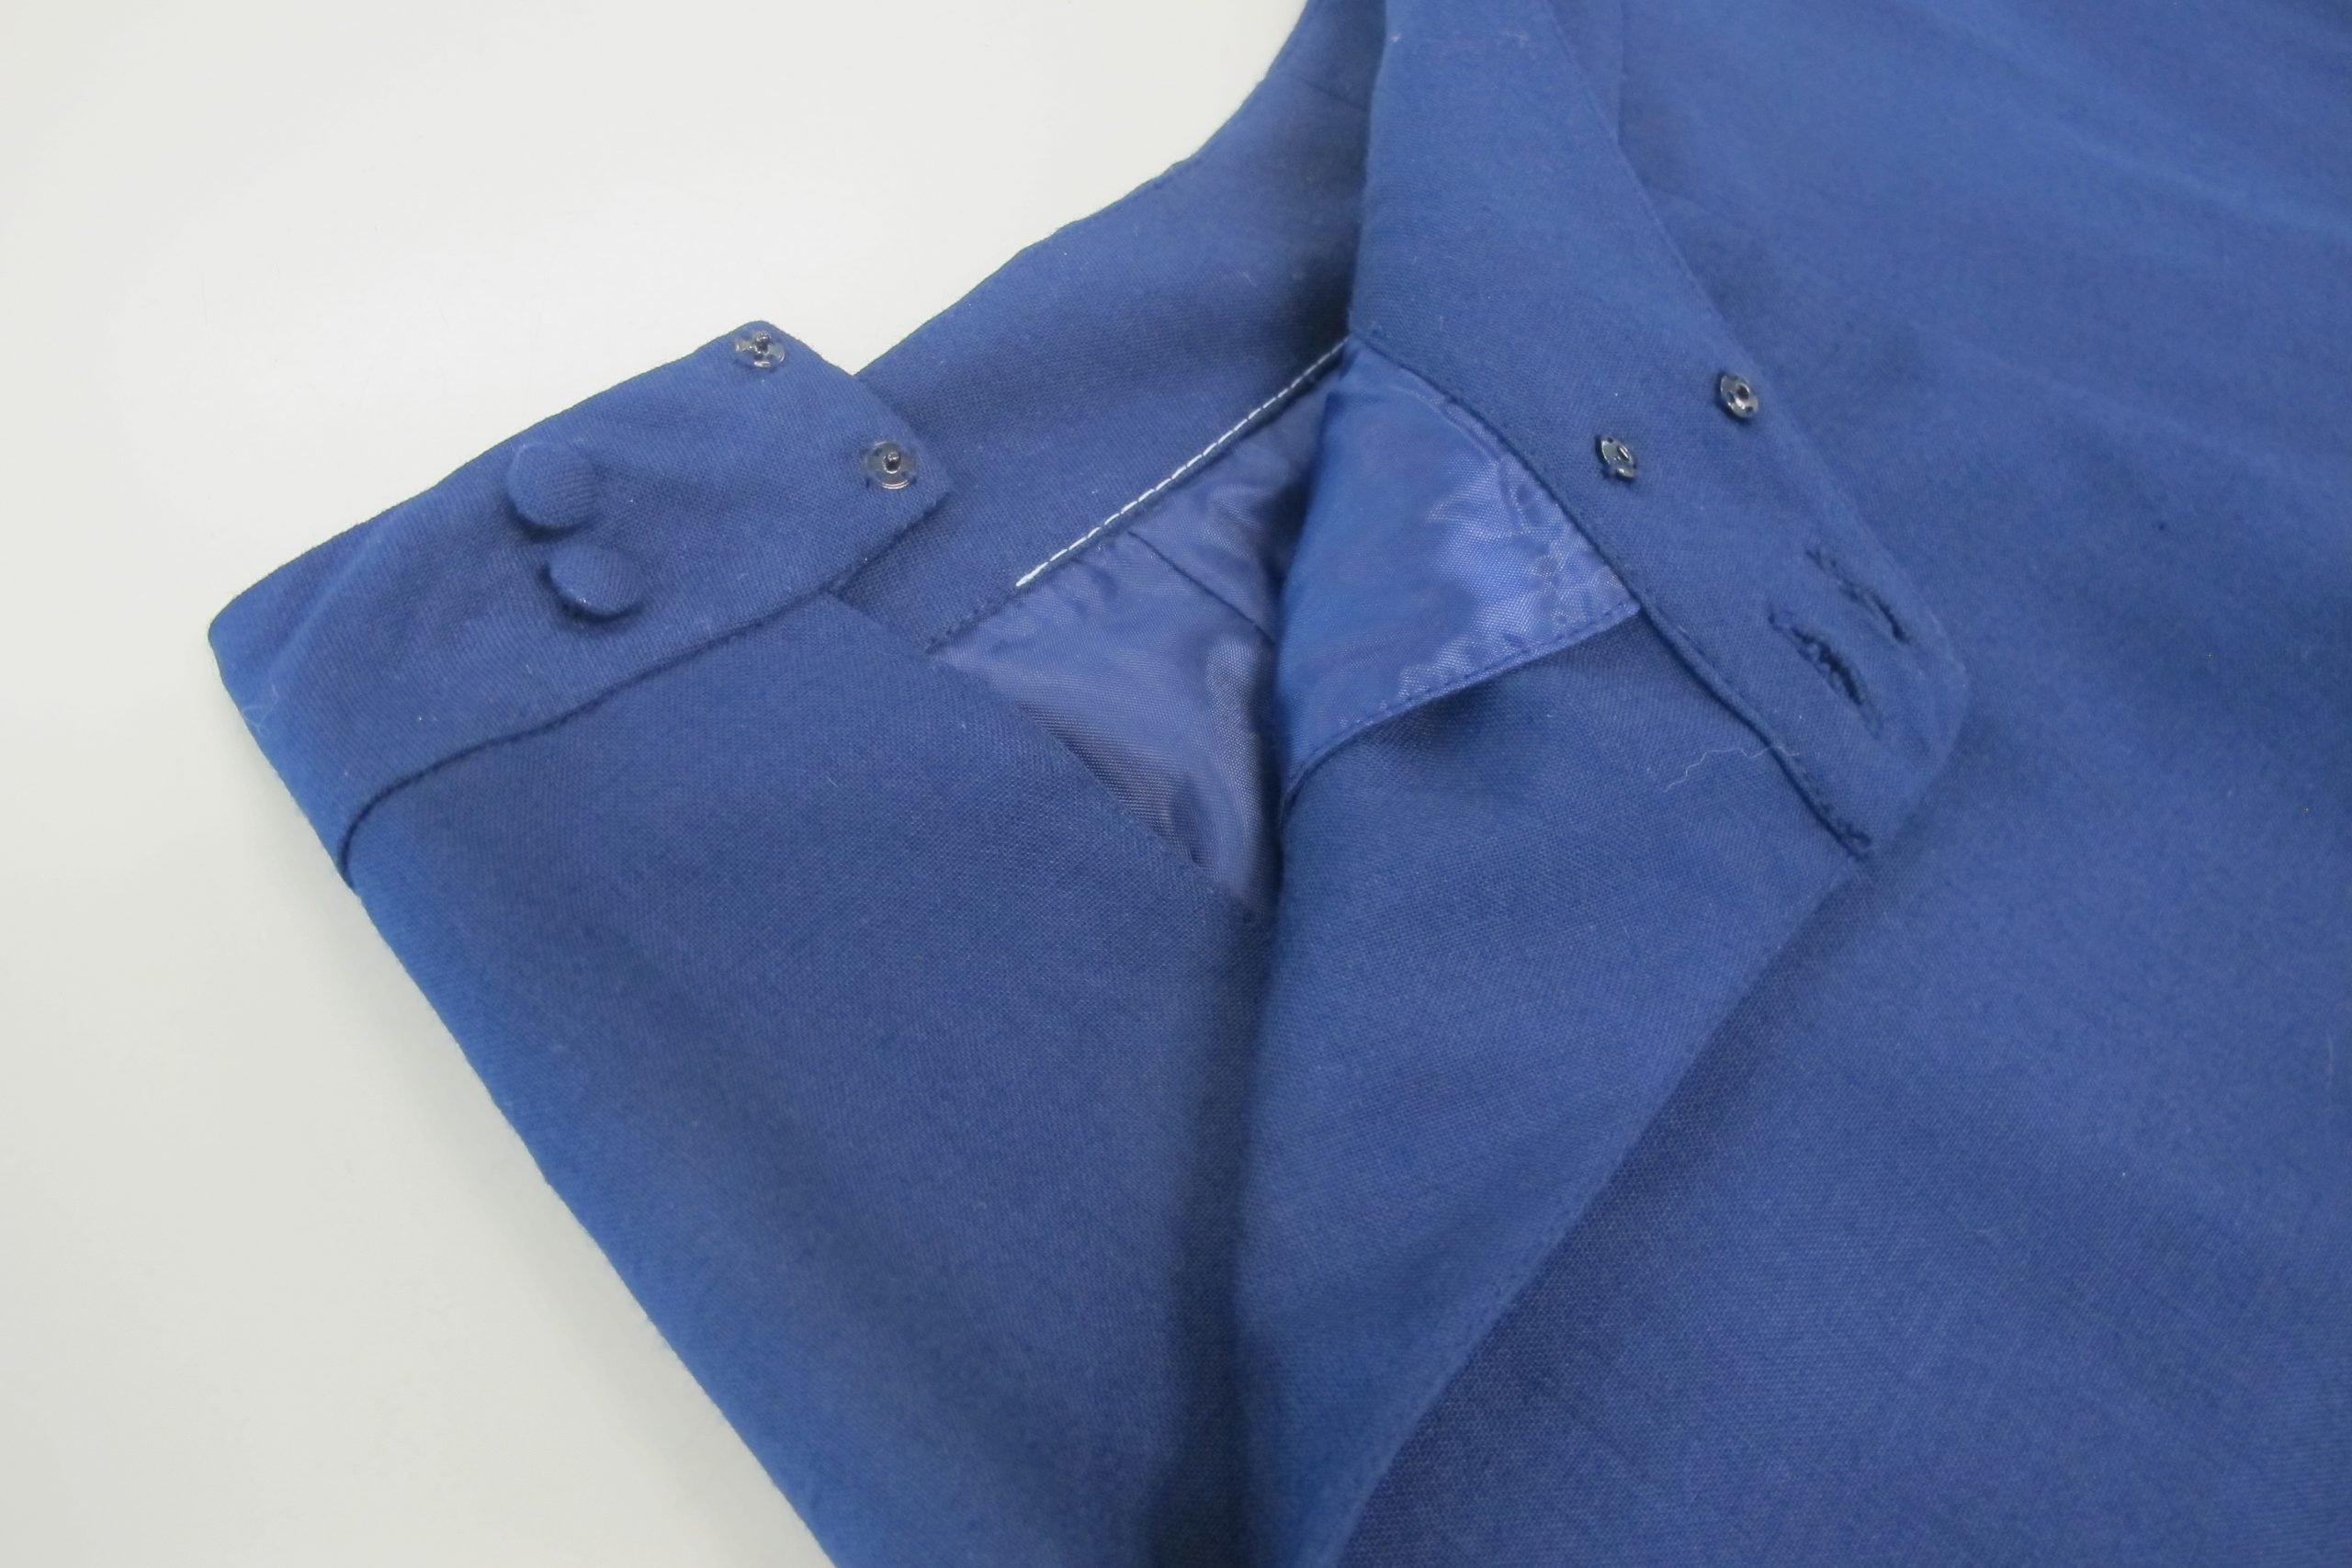 Adjusting the cowl skirt – Design for A Living Wardrobe